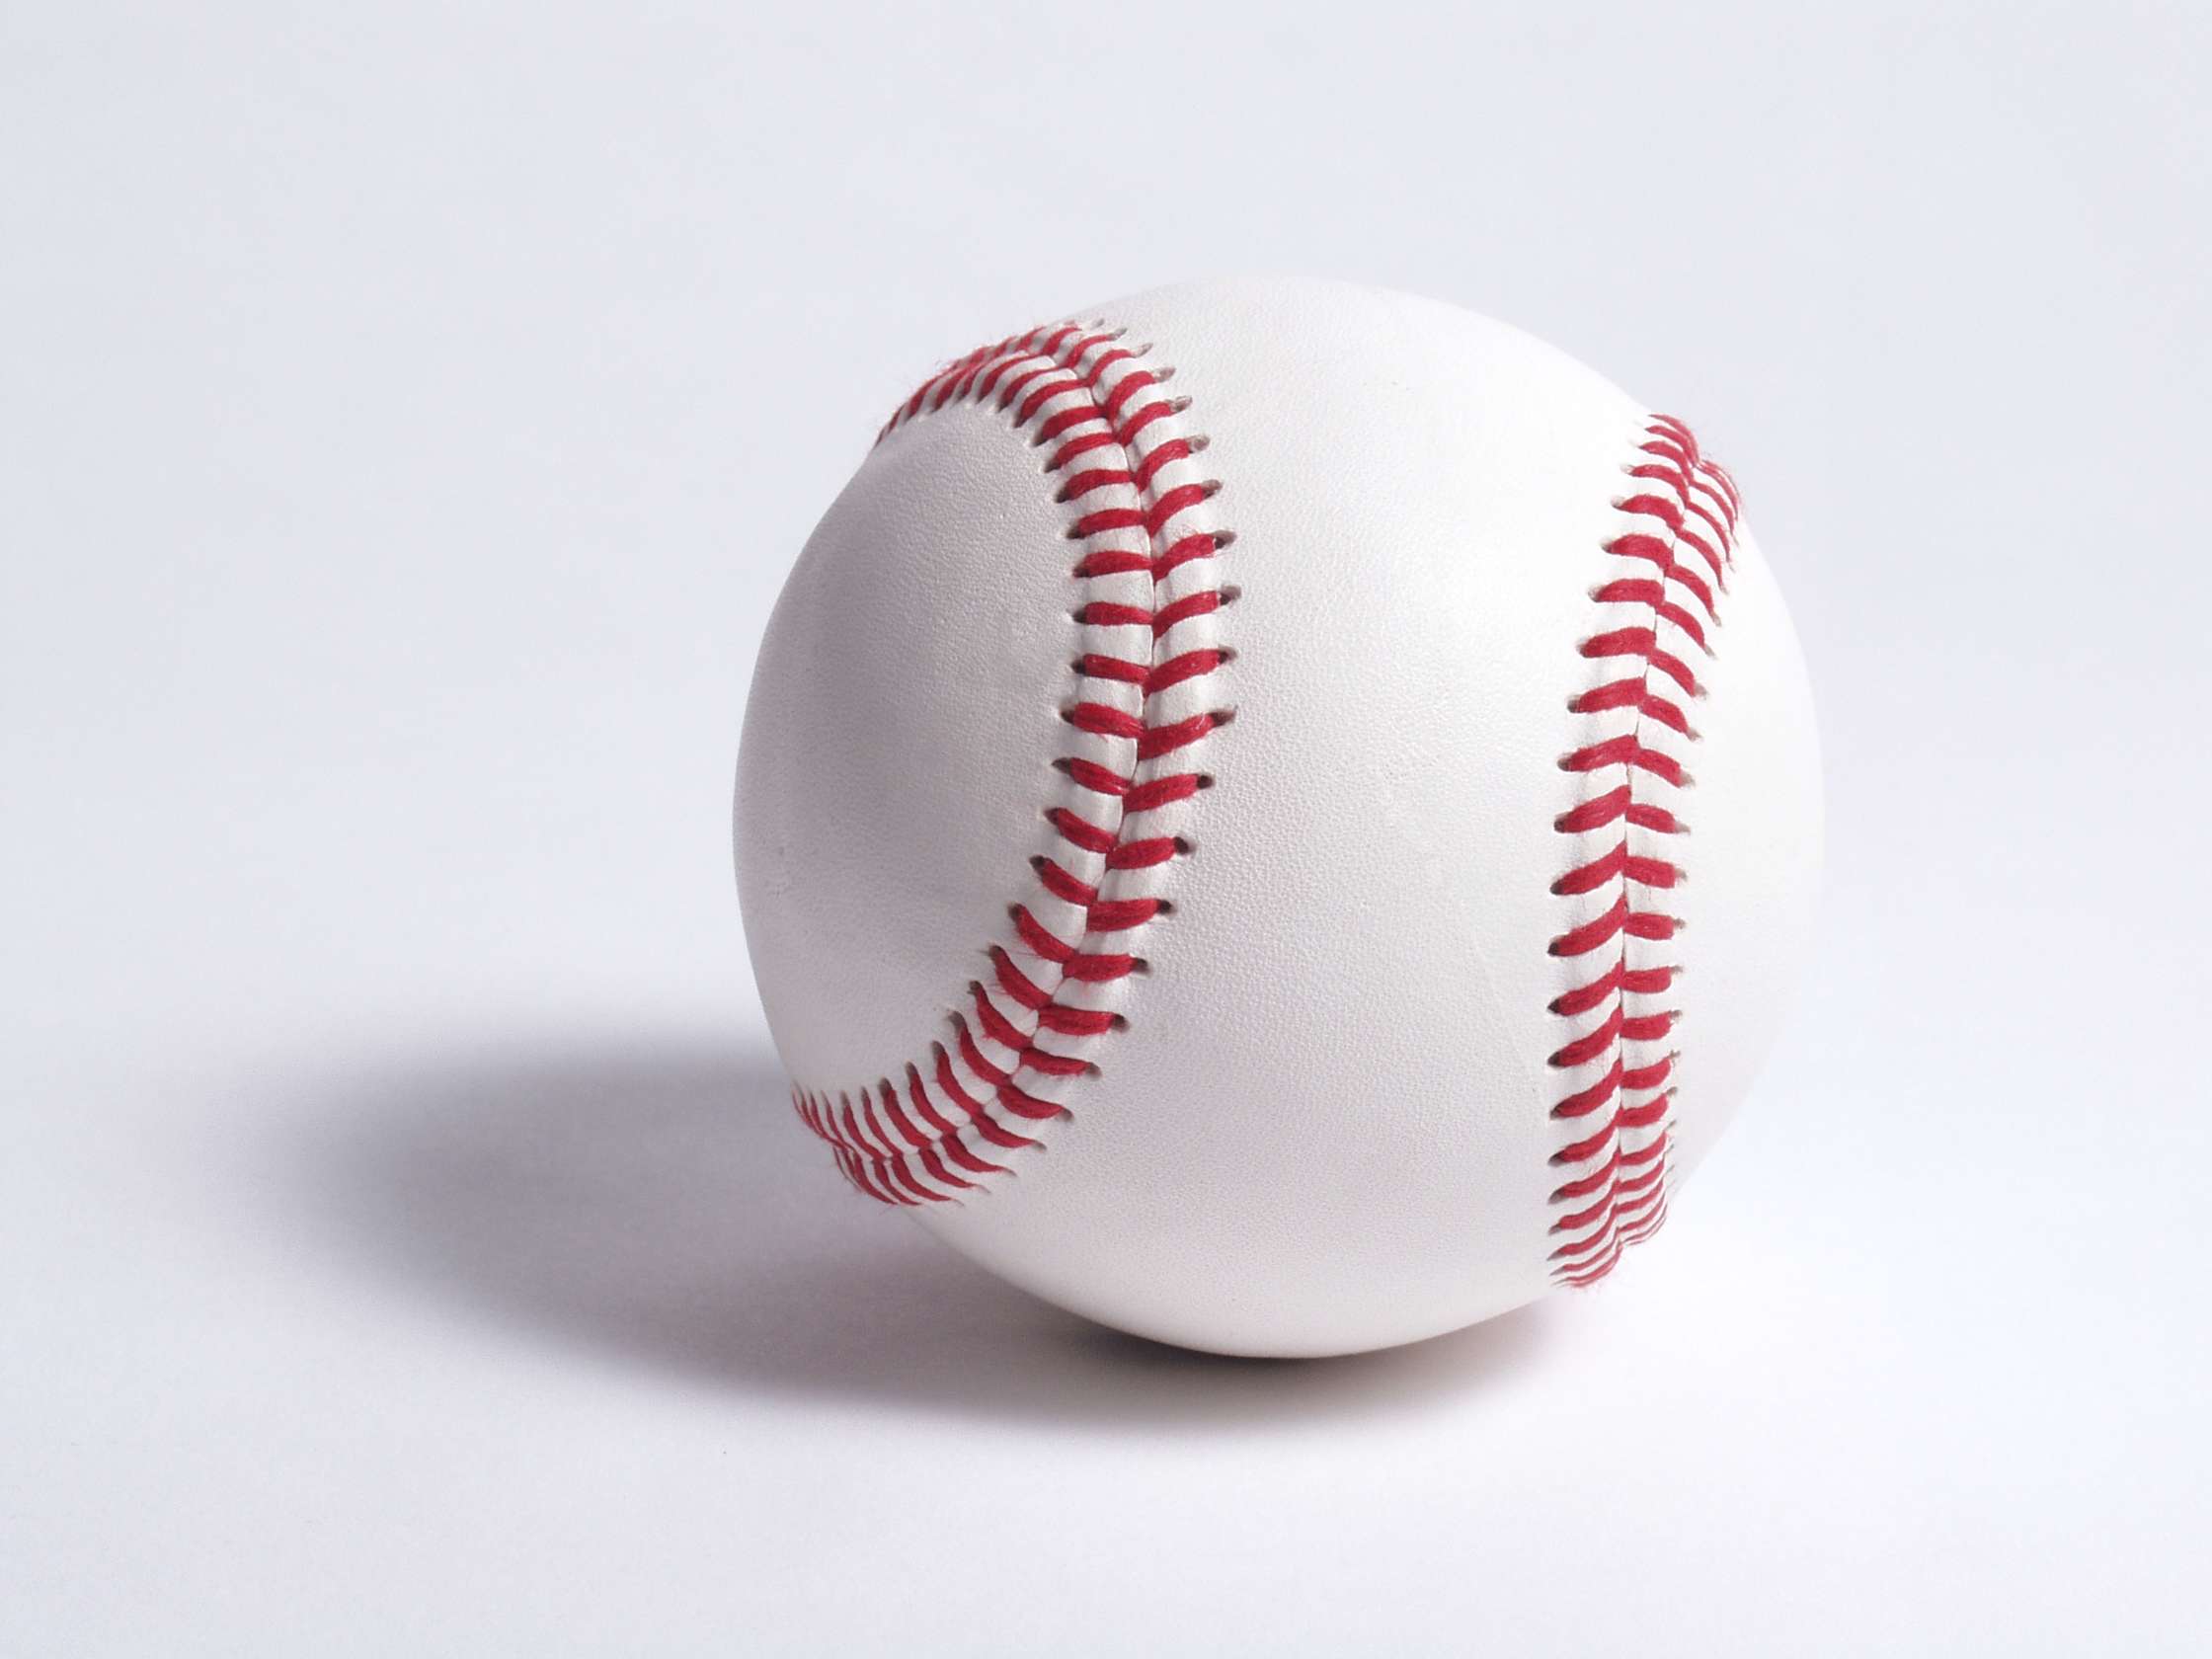 دانلود تصویری از توپ مخصوص ورزش بیسبال